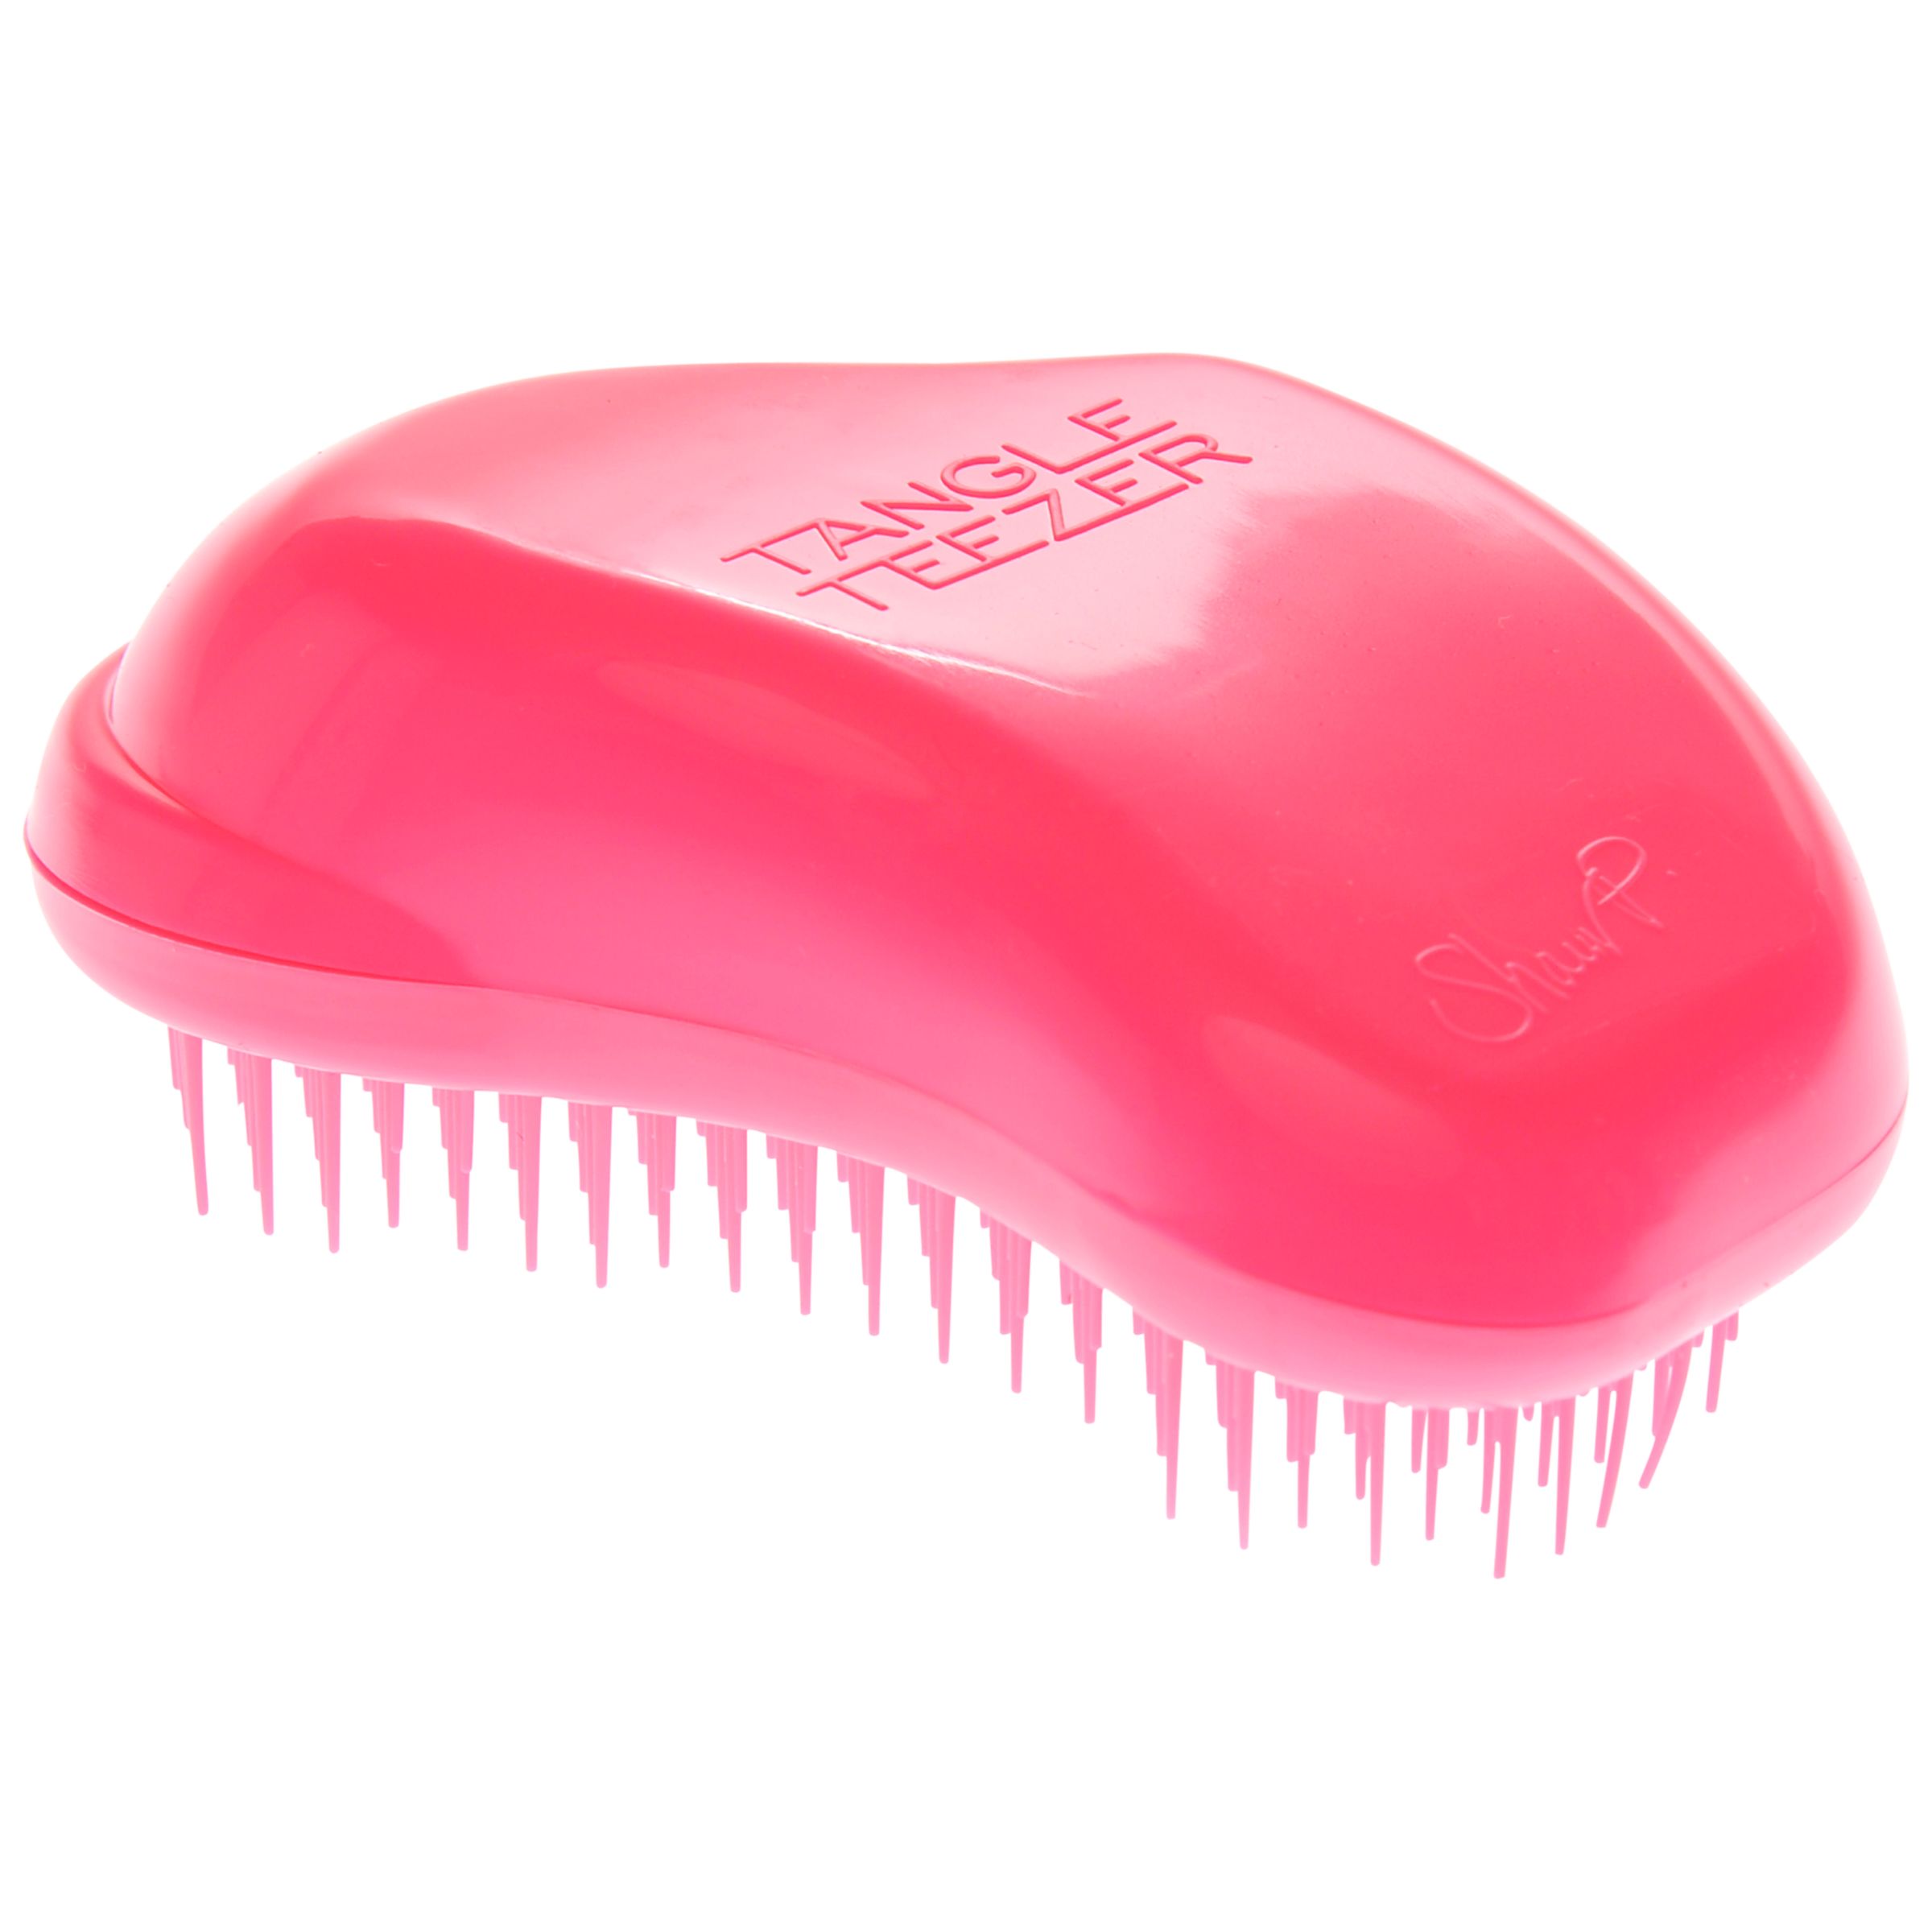 Tangle Teezer Detangling Hair Brush, Pink